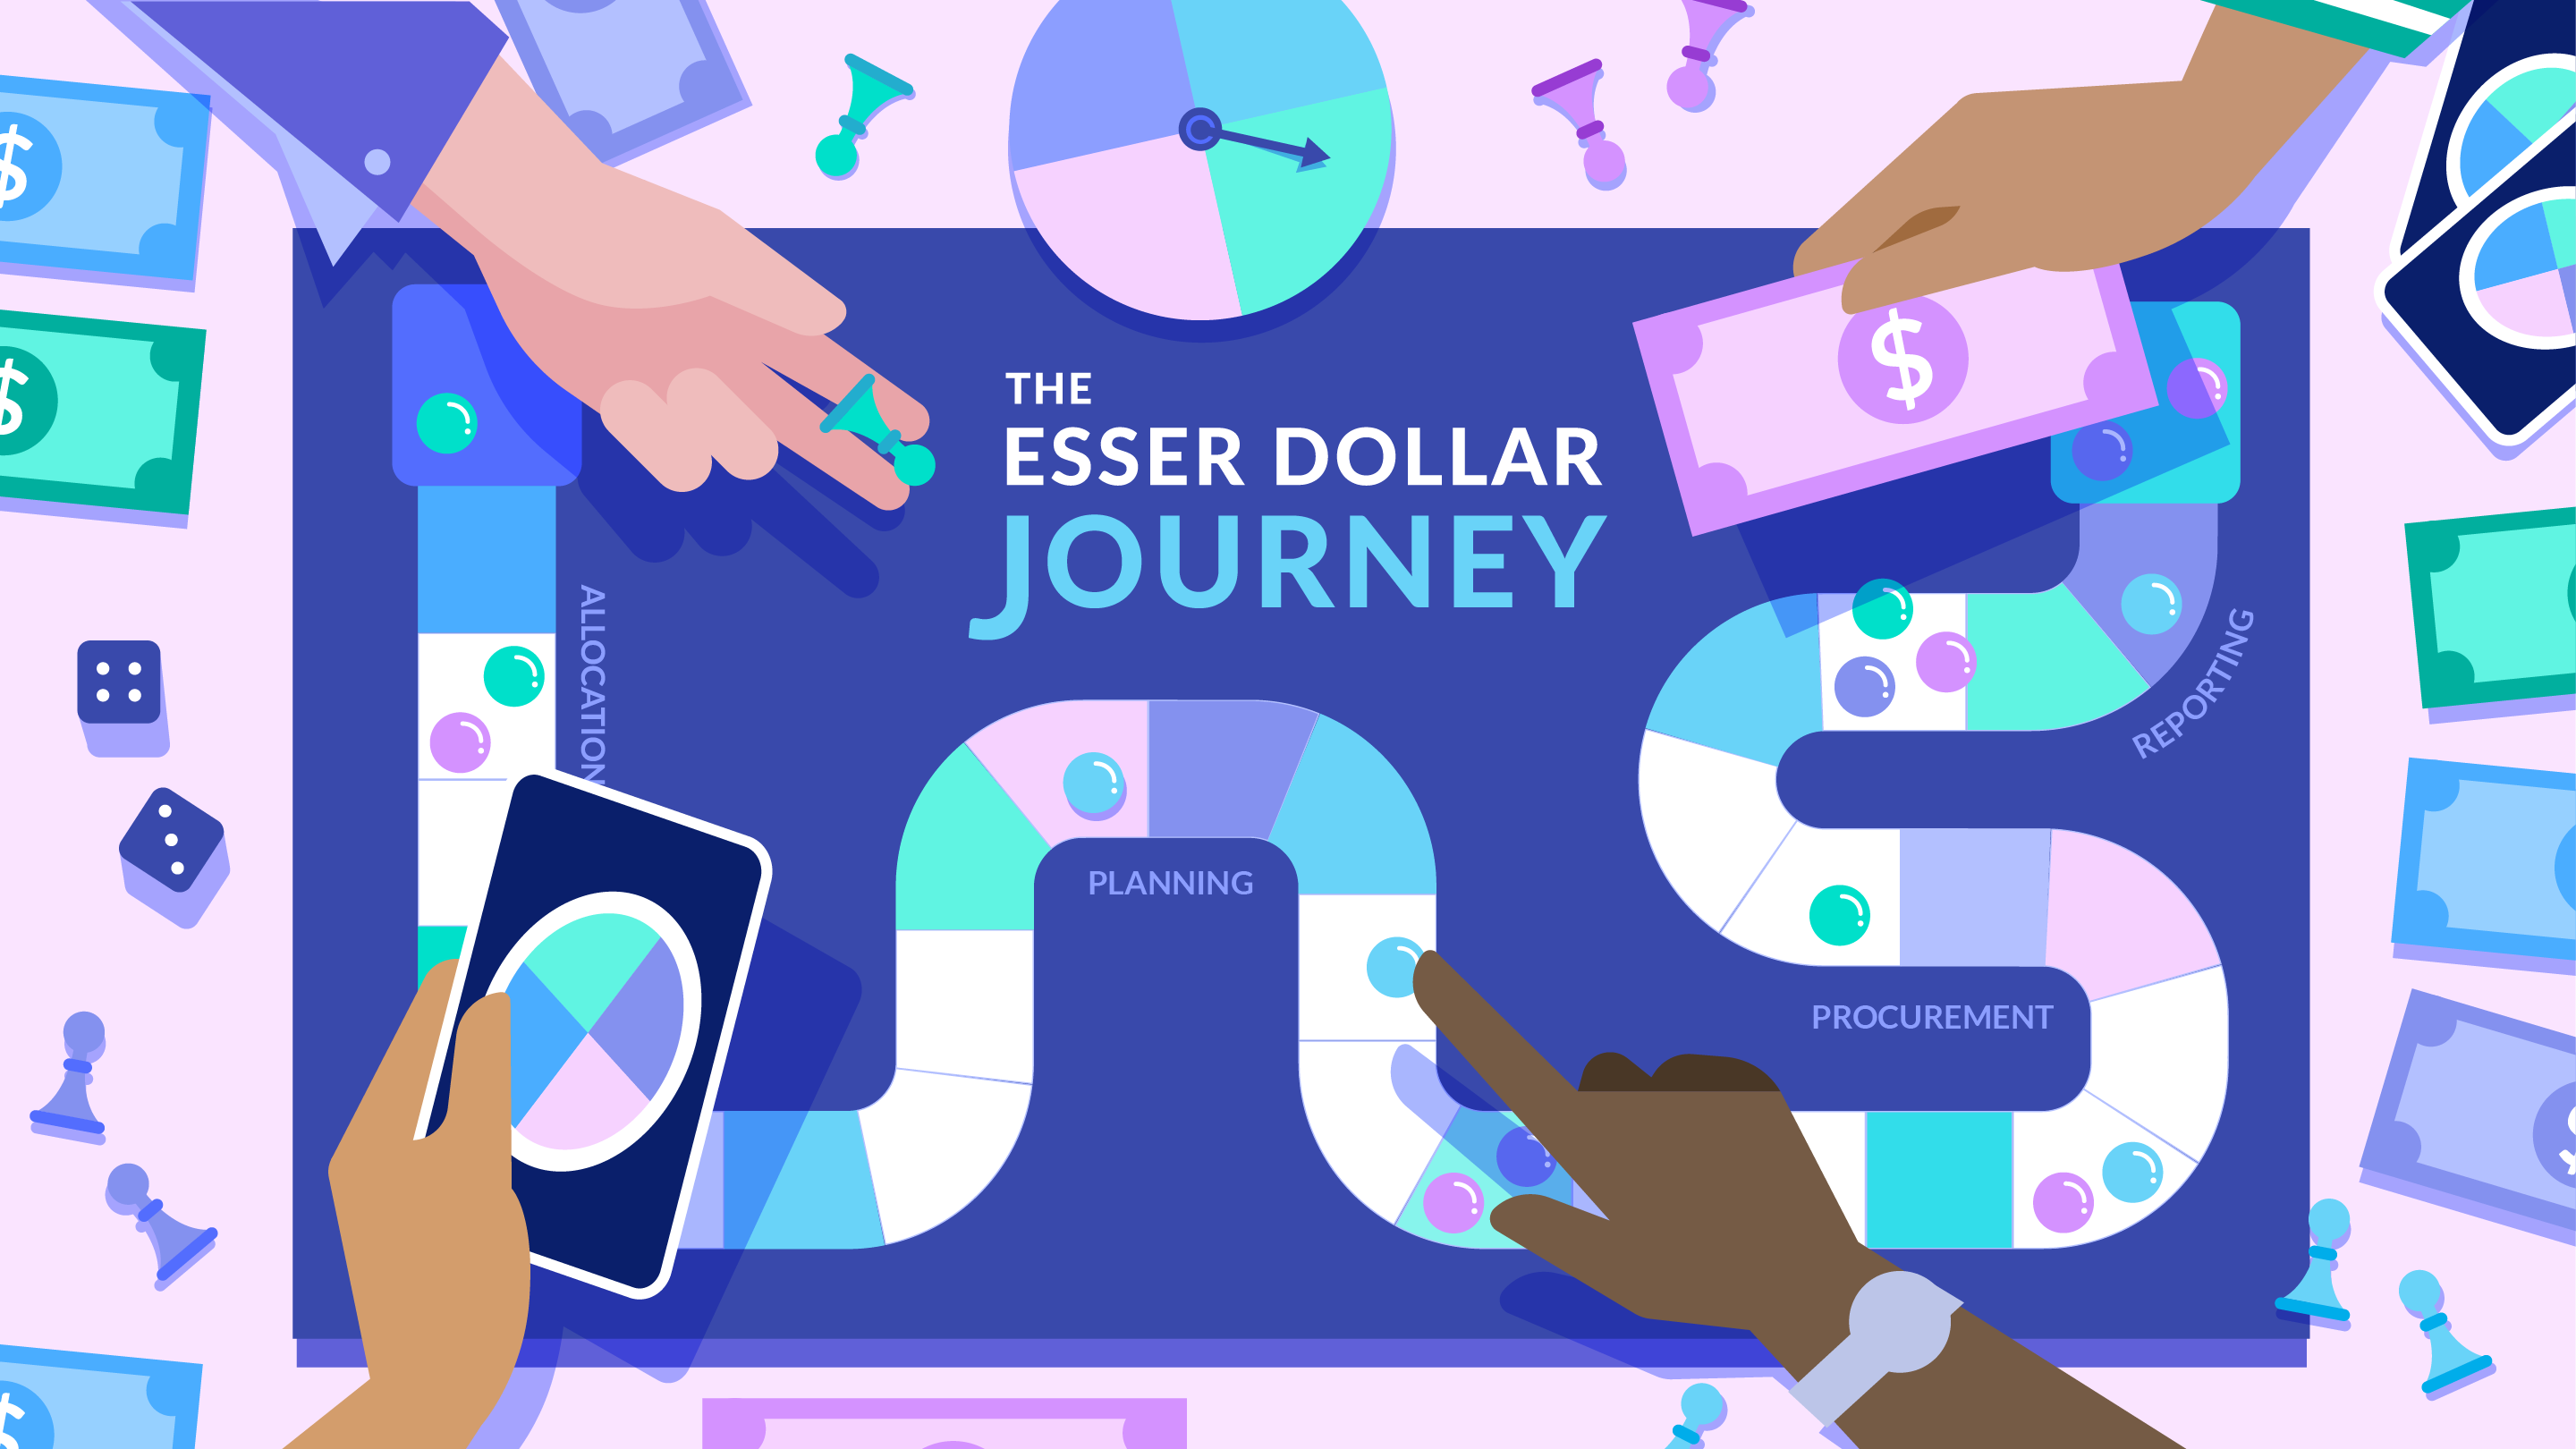 The ESSER Dollar Journey